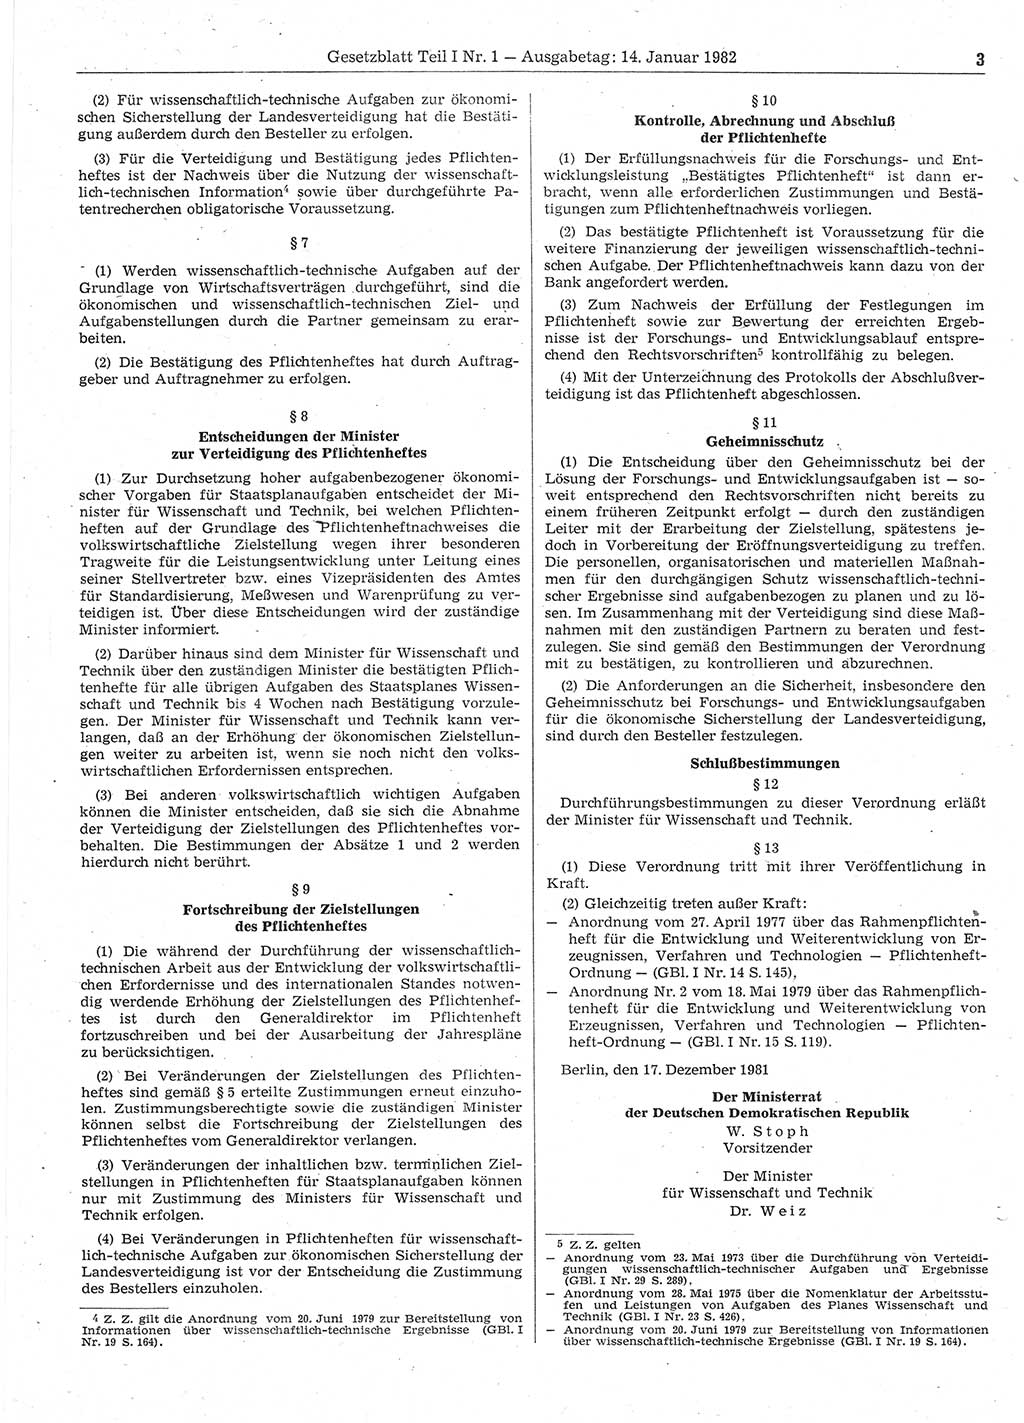 Gesetzblatt (GBl.) der Deutschen Demokratischen Republik (DDR) Teil Ⅰ 1982, Seite 3 (GBl. DDR Ⅰ 1982, S. 3)